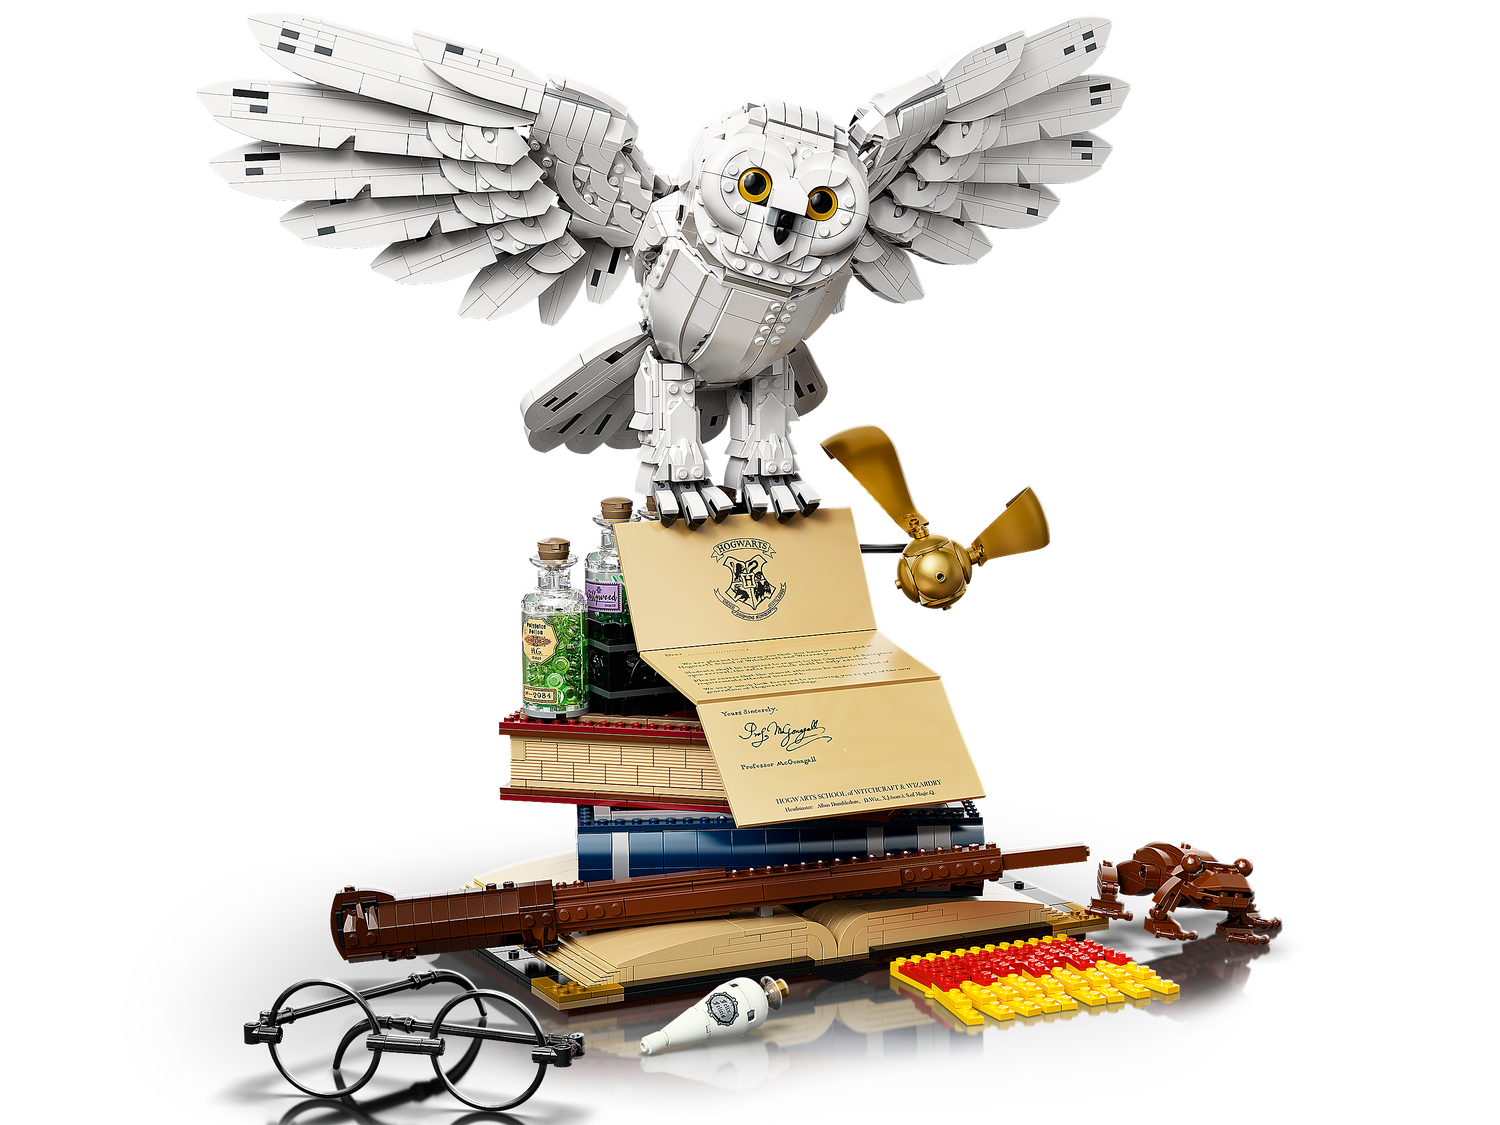 Icone di Hogwarts™ - Edizione del collezionista